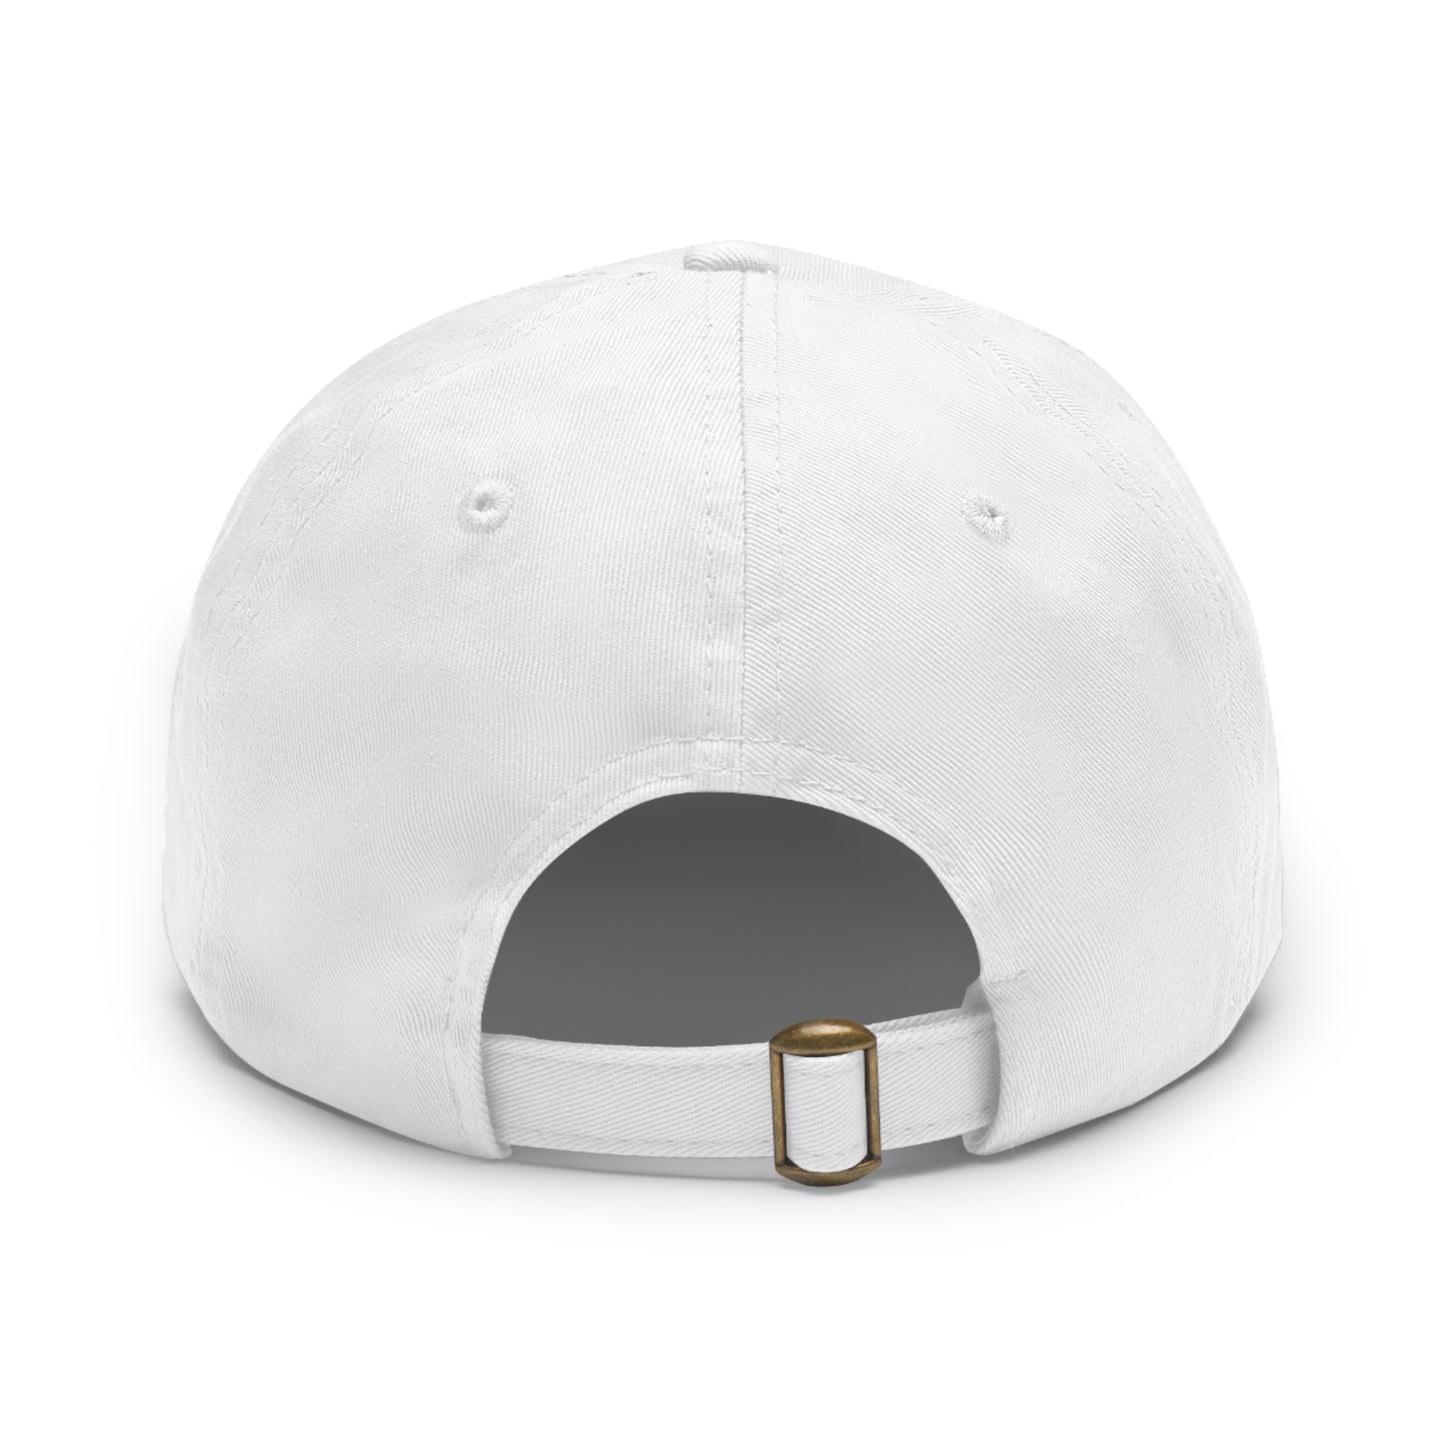 NENR LIFESTYLE HAT ~ Low Profile Cap